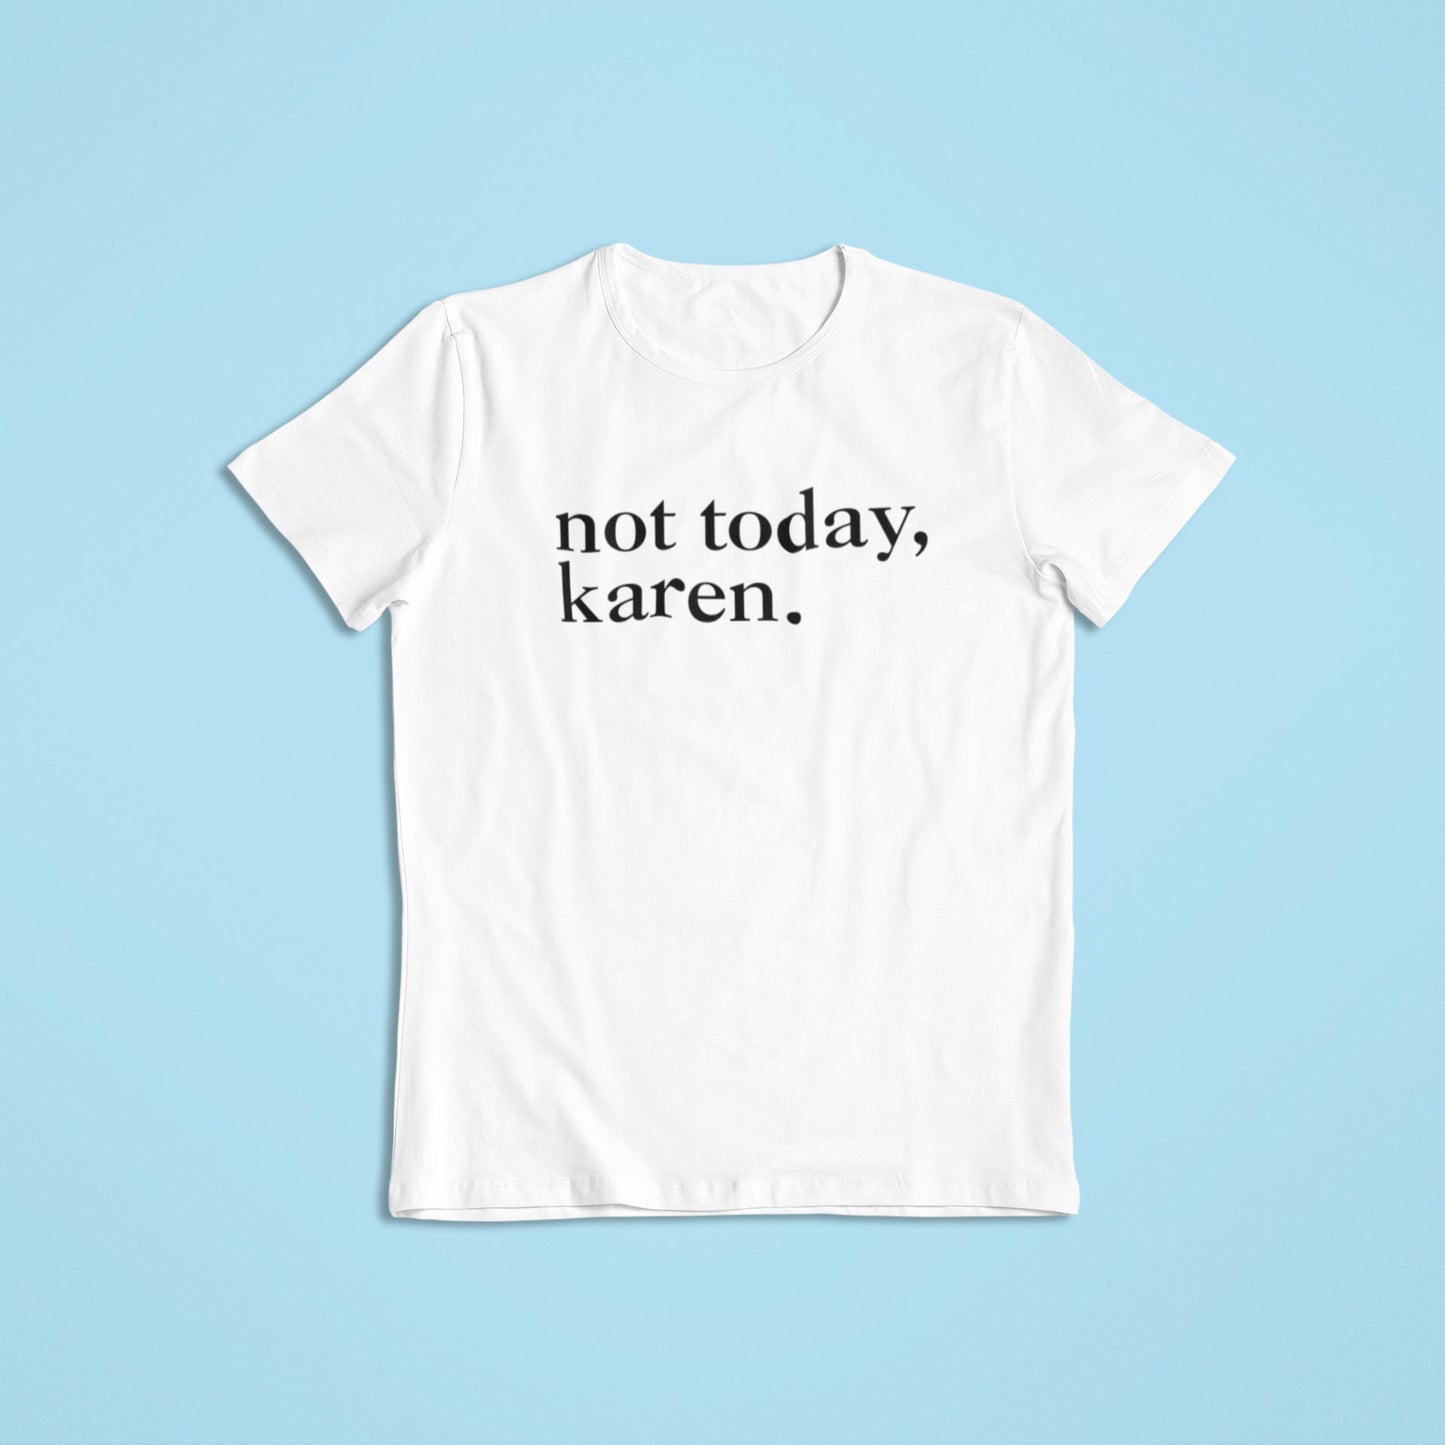 Not Today, Karen. Shirt